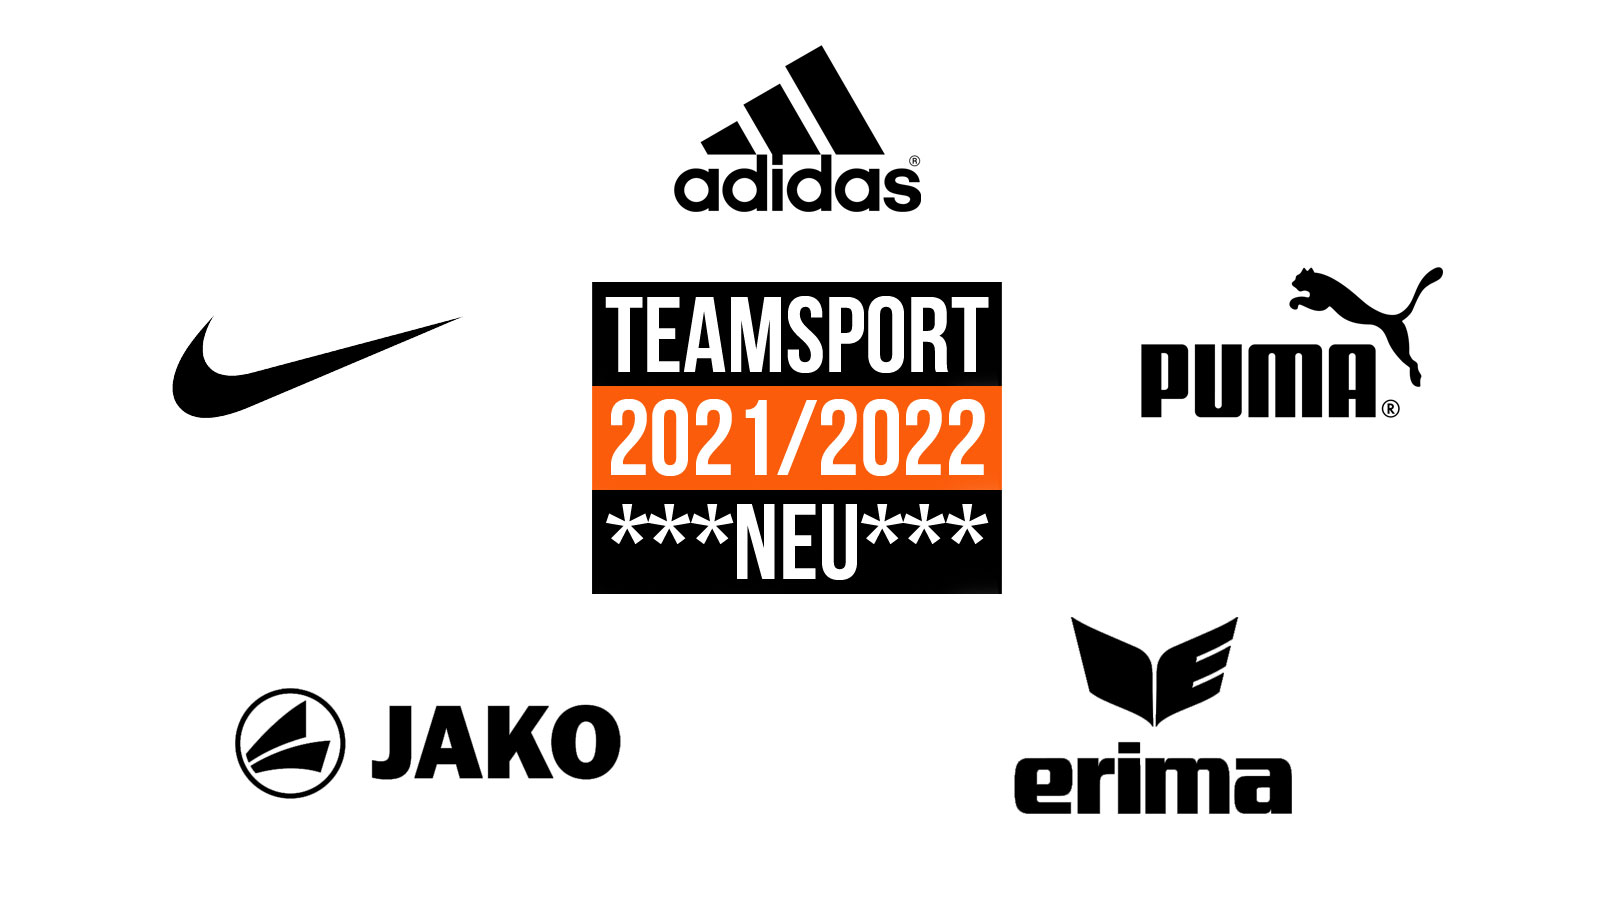 Teamsport 2021/2022 der Marken adidas, nike, puma, jako und erima